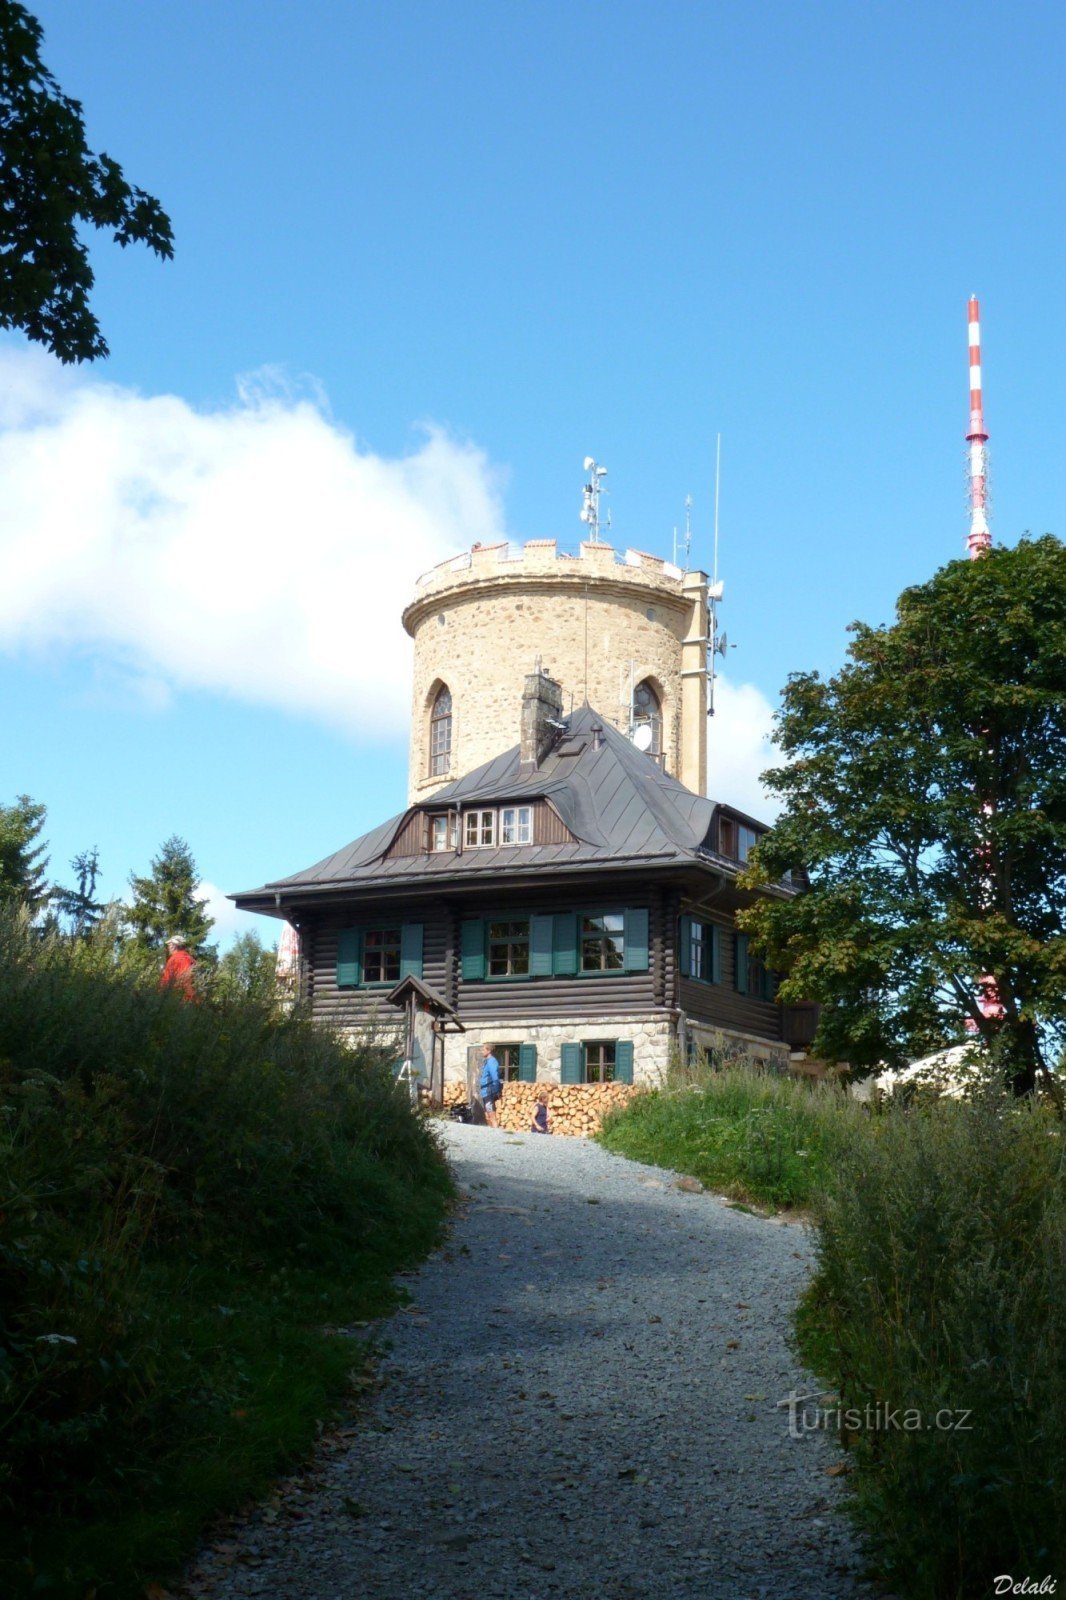 Torre de vigia e cabana de montanha em Kleti 1